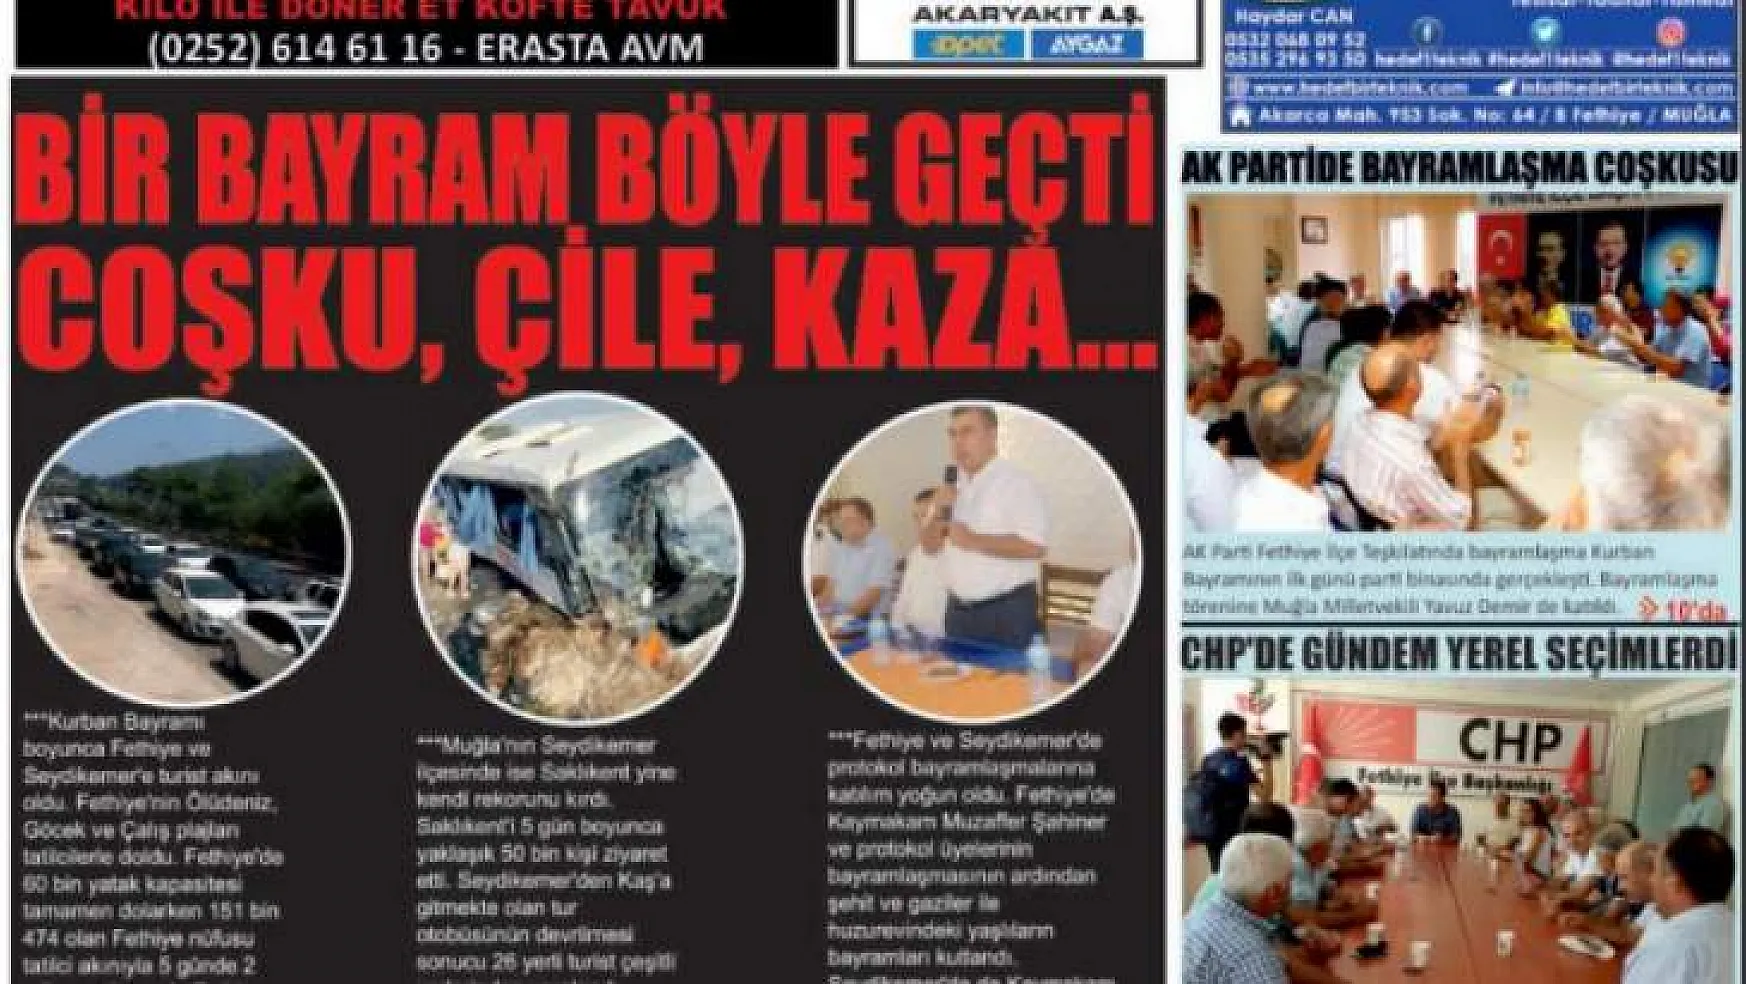 25 Ağustos 2018 Gerçek Fethiye Gazetesi